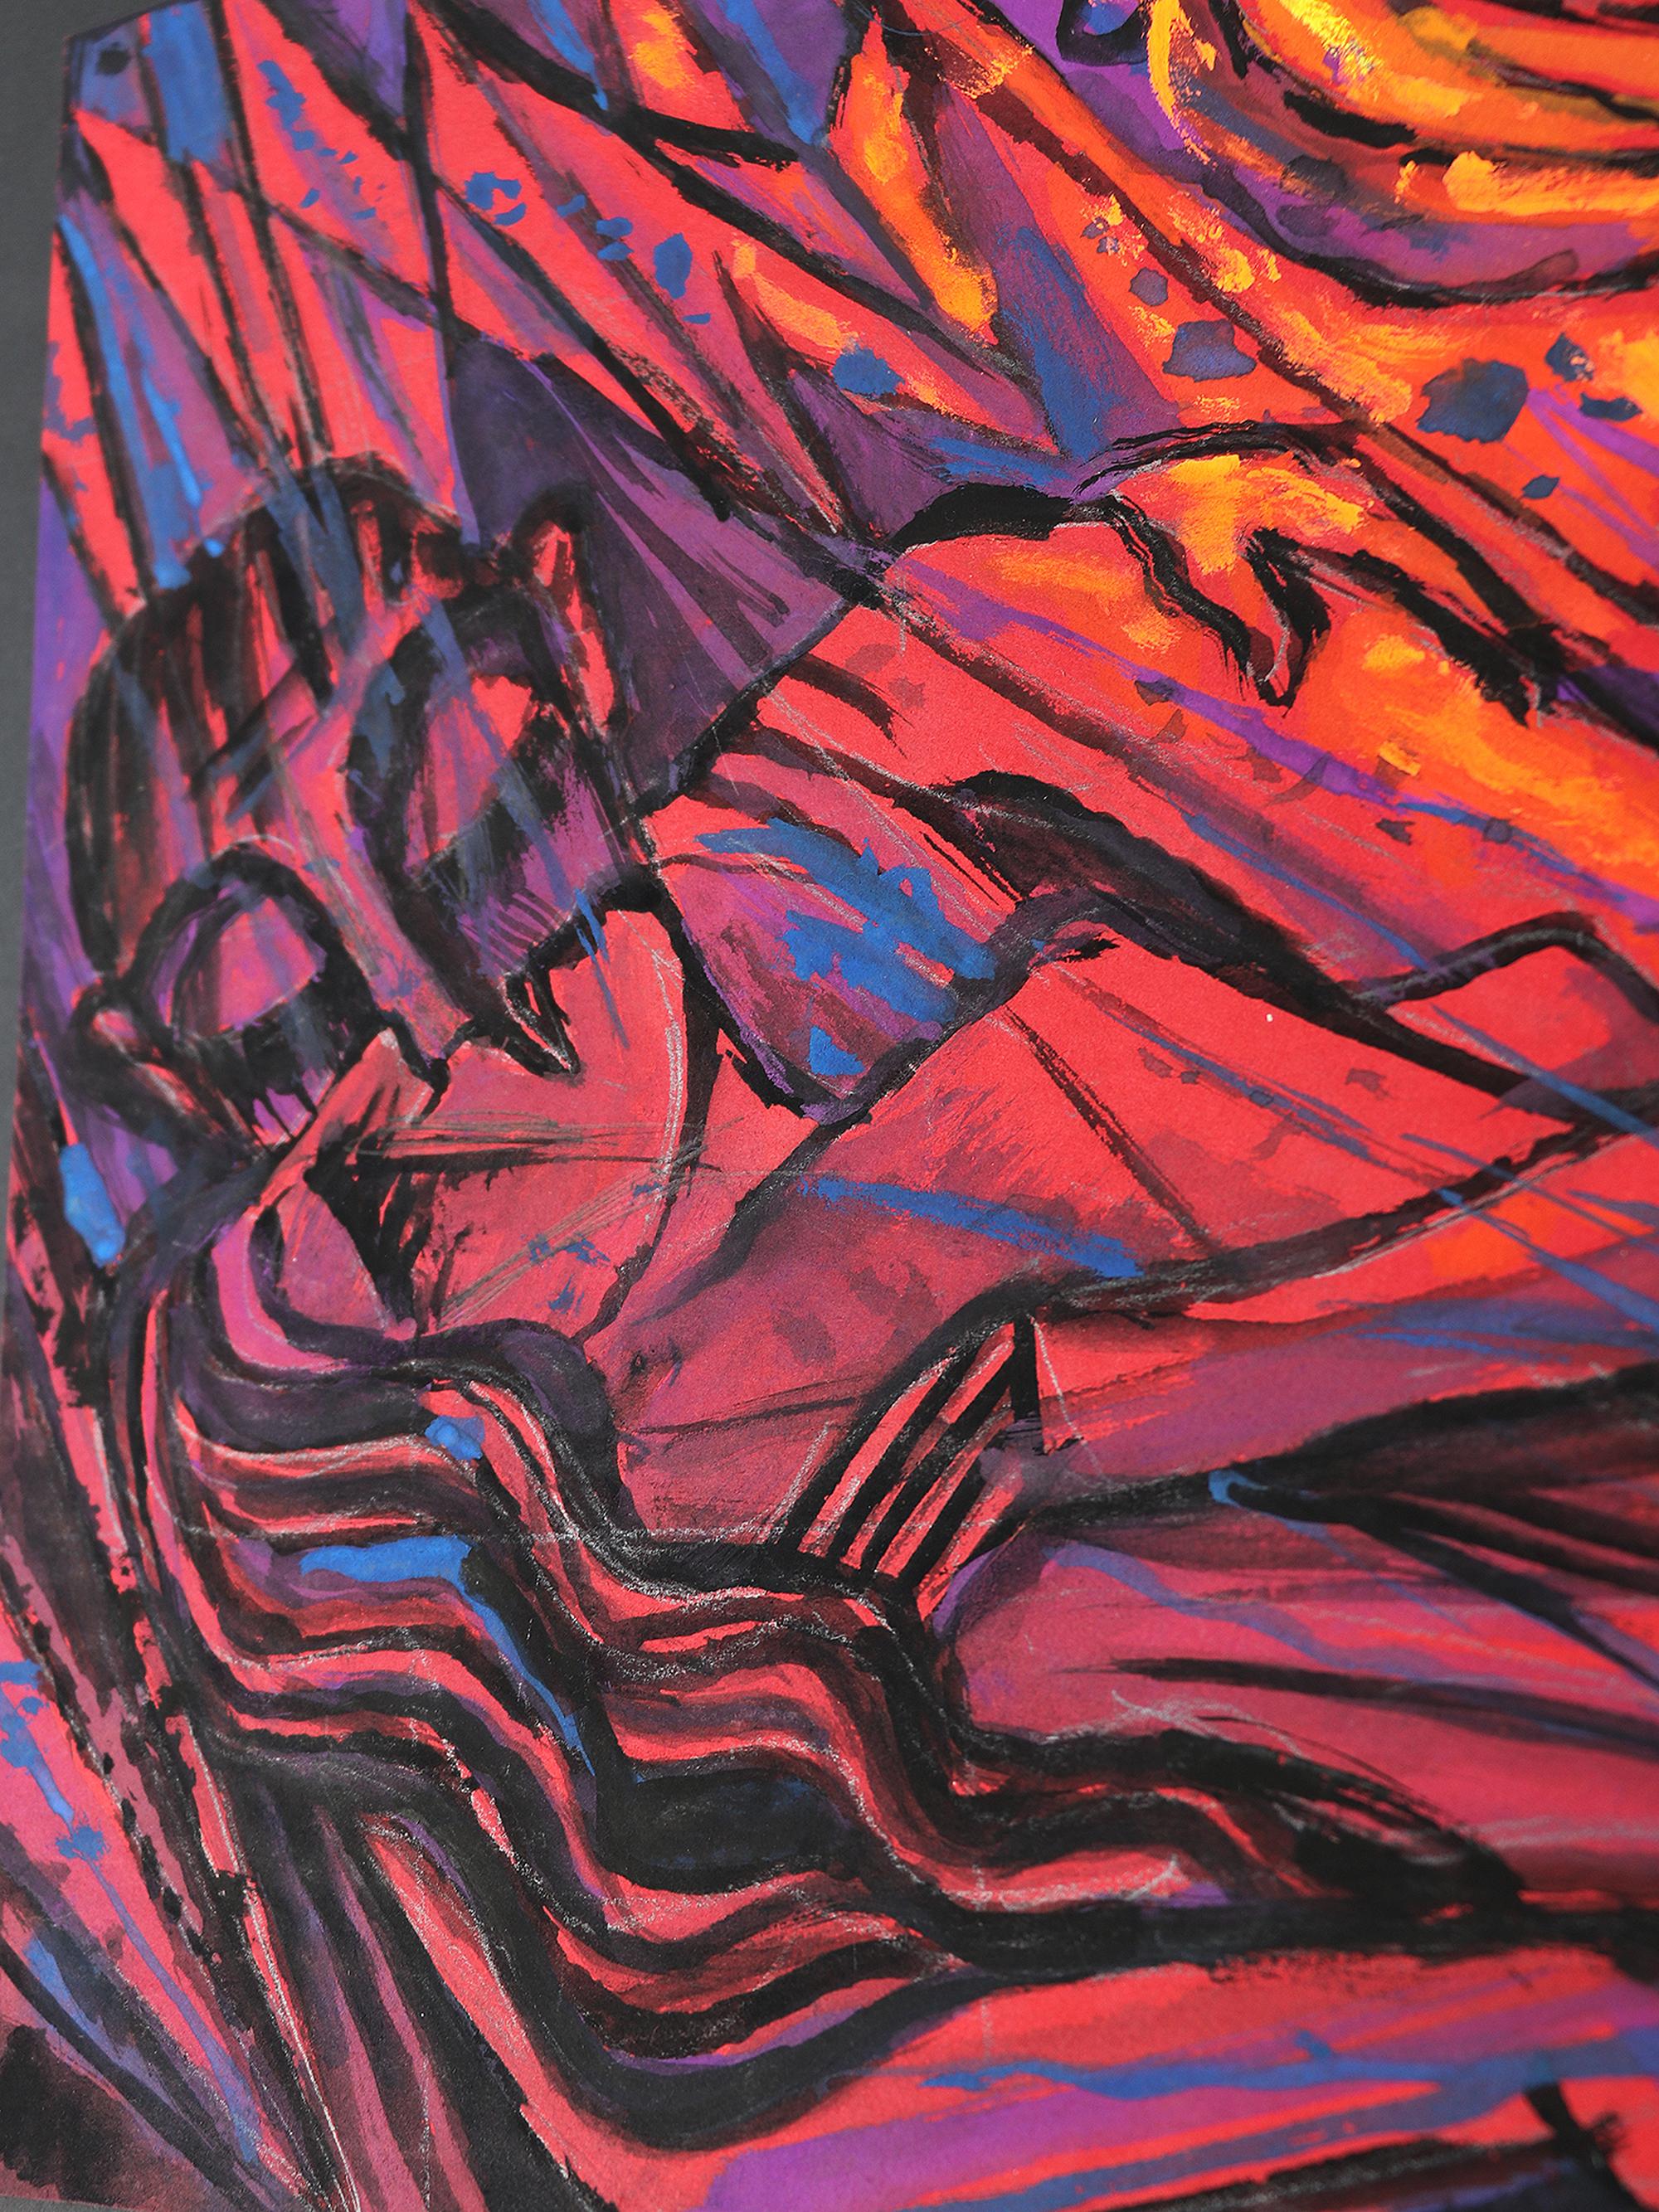 Emil Betzler
Deutsche expressionistische Temperamalerei auf Korn 'Paar in Rot, Anfang 1960er Jahre
Ein herausragendes Werk expressionistischer Kunst.
Nicht signiert, aber eindeutig Emil Betzler zuzuschreiben.
Ähnliches Werk in 'Emil Betzler' -